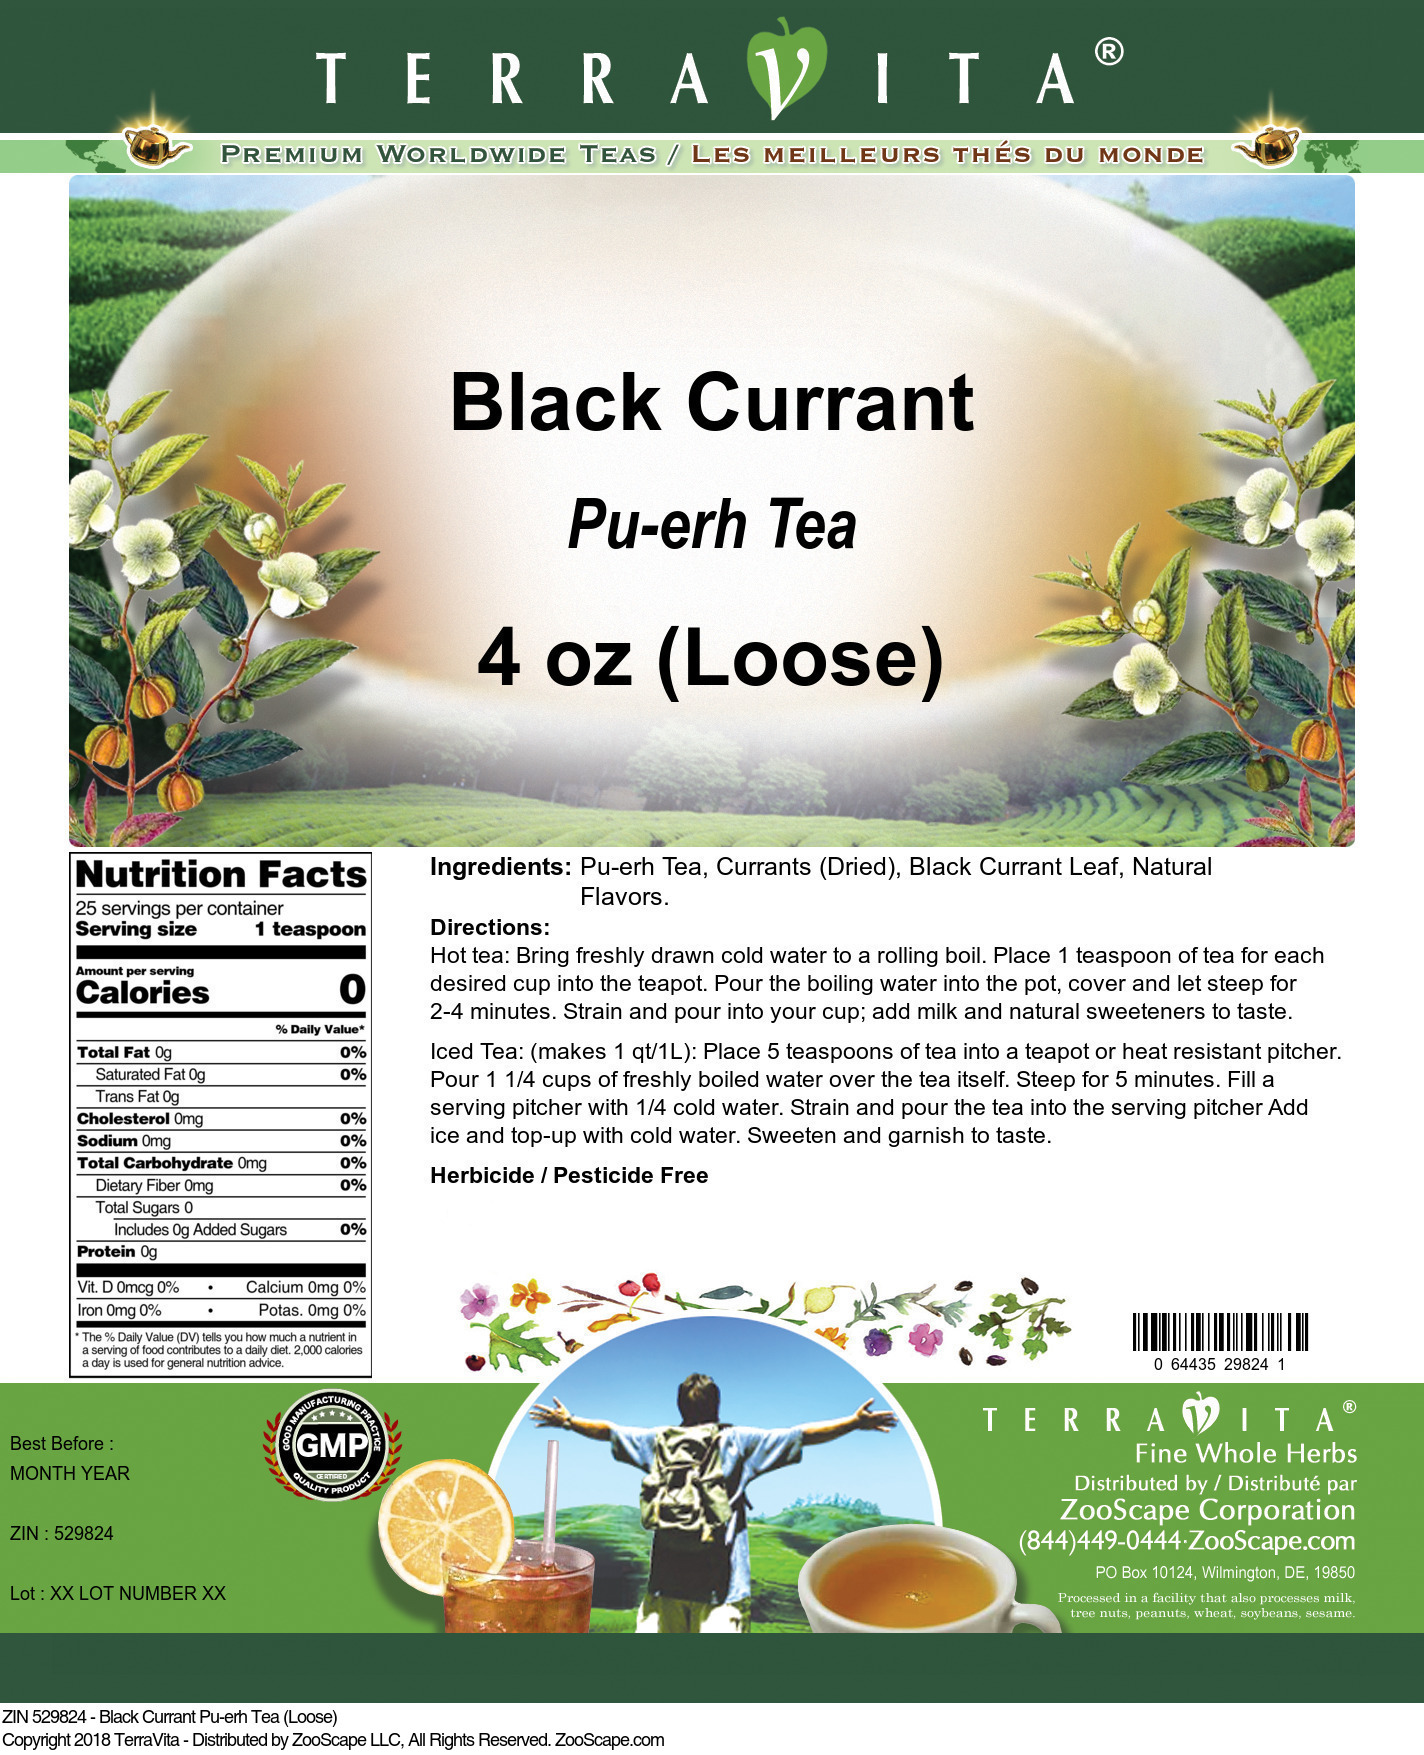 Black Currant Pu-erh Tea (Loose) - Label